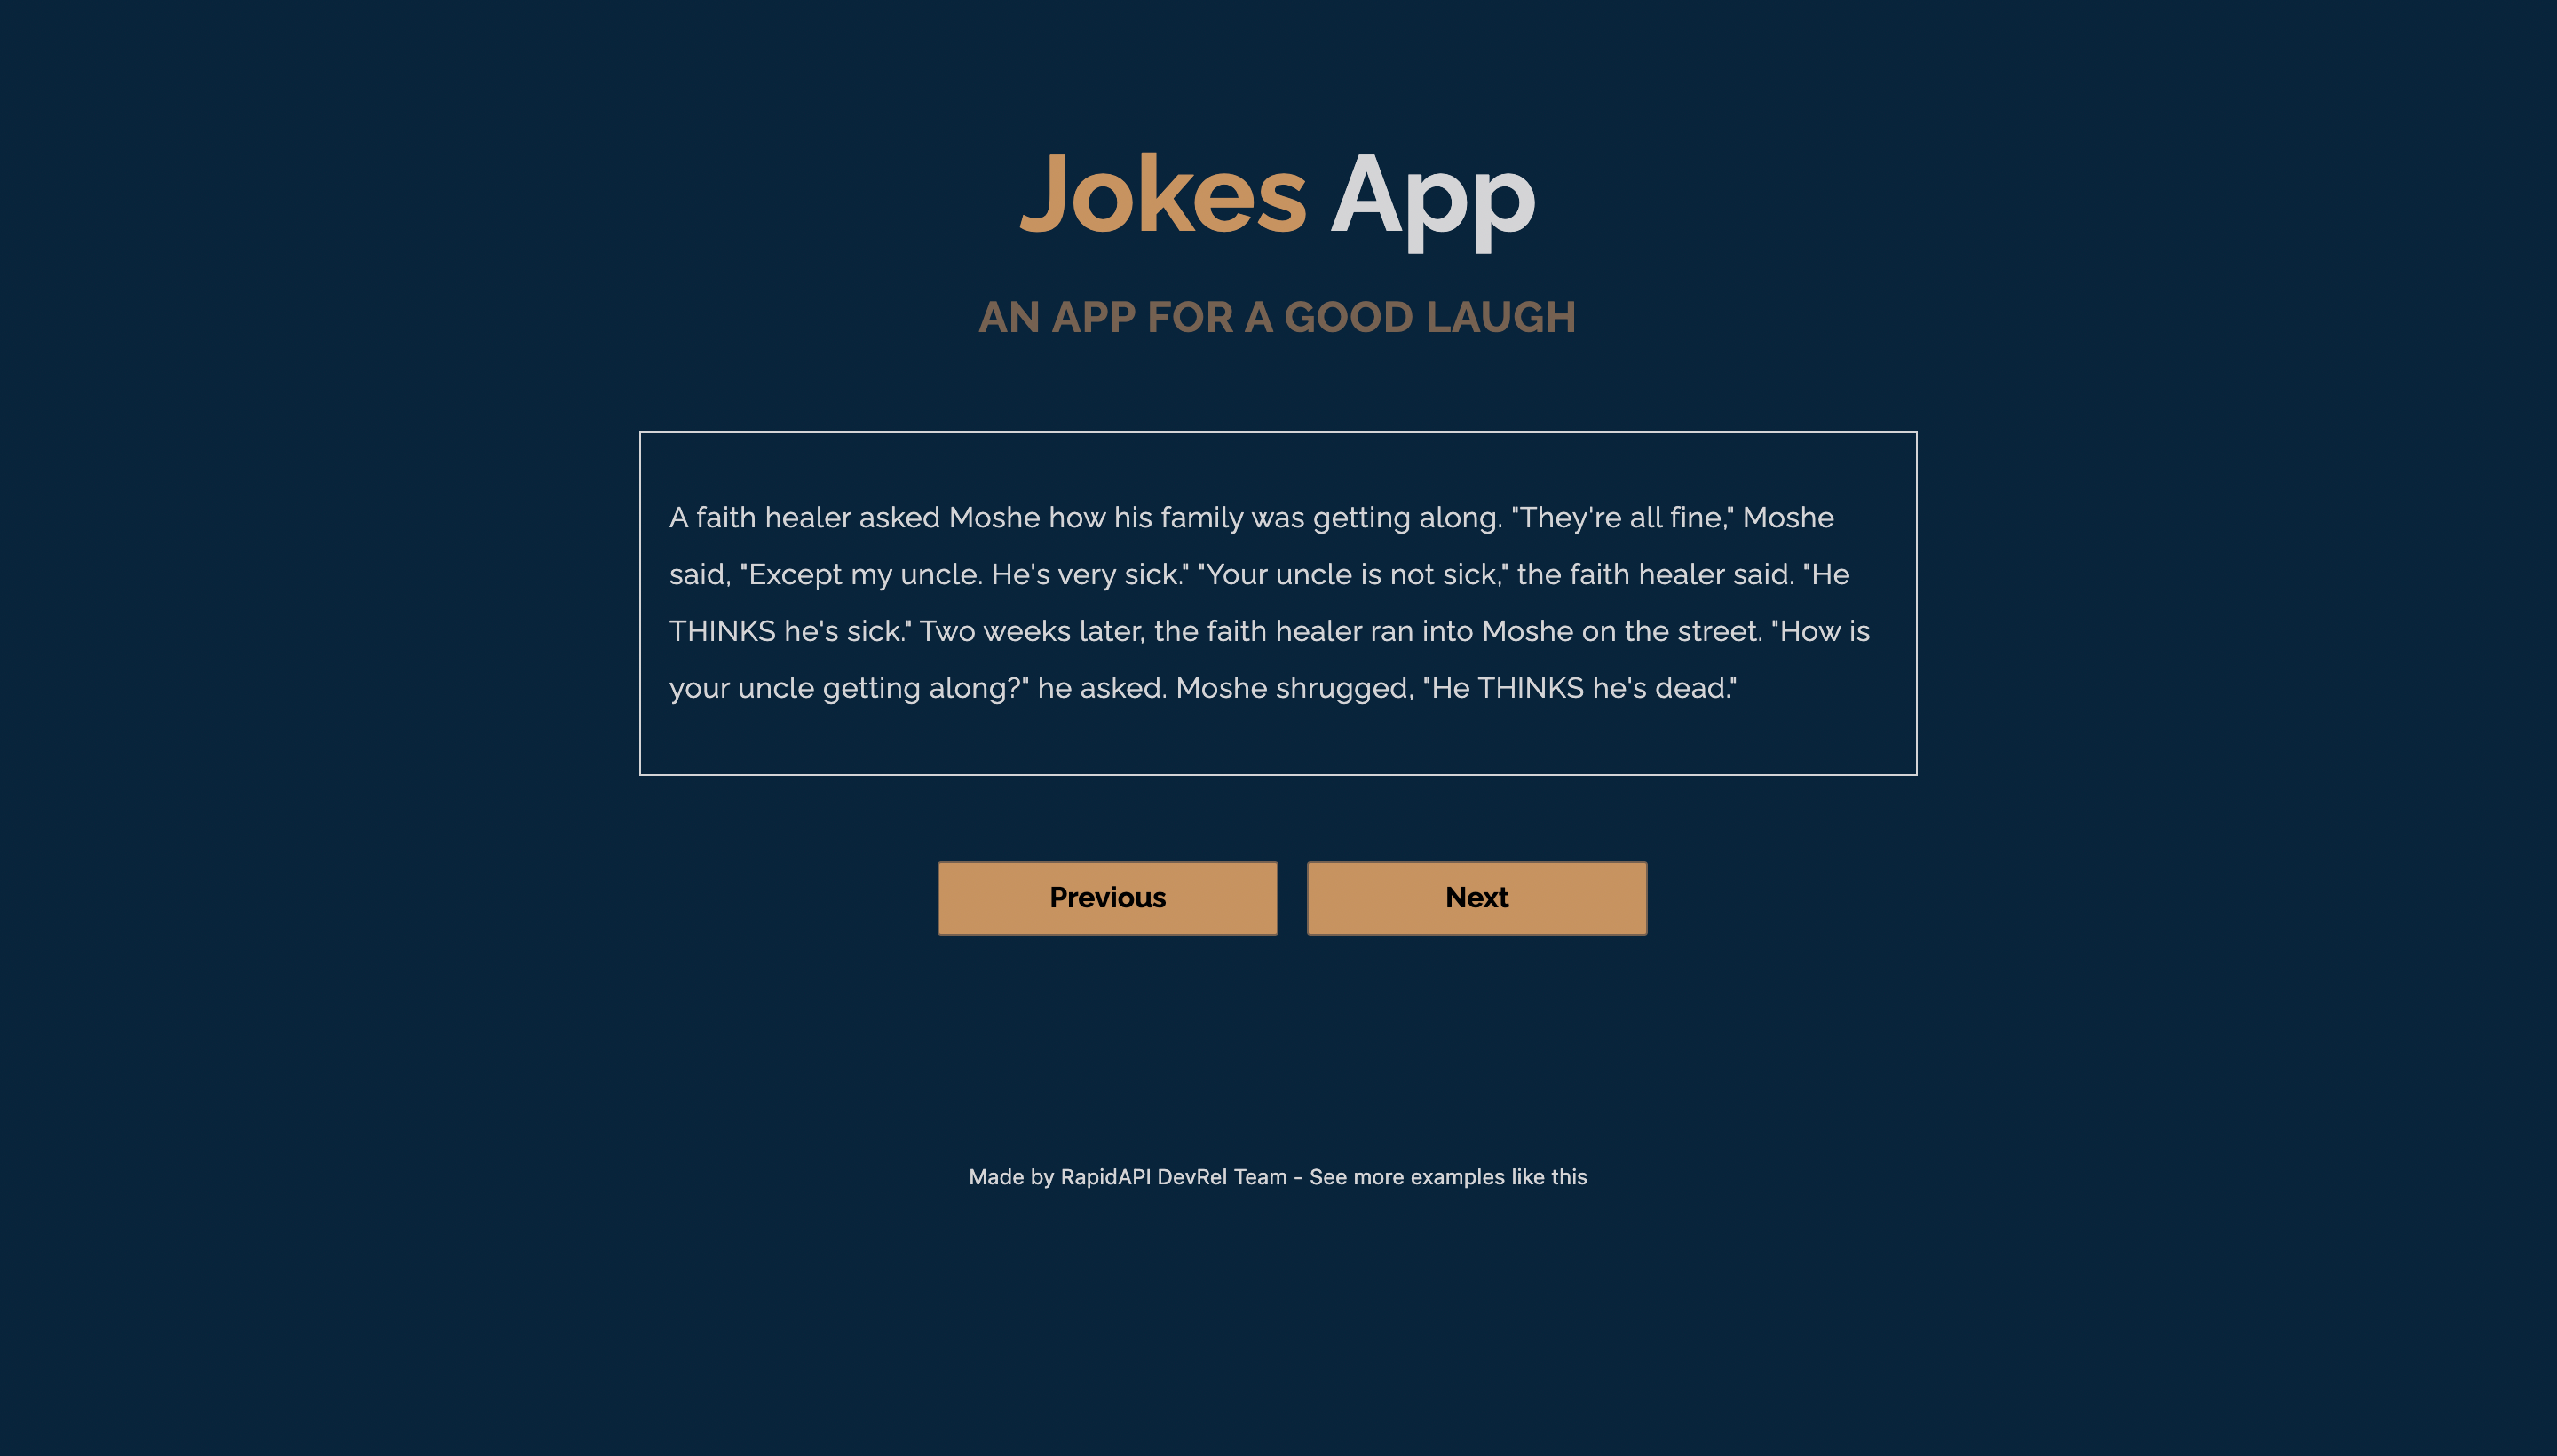 Joke App built with Next.js and Joke API